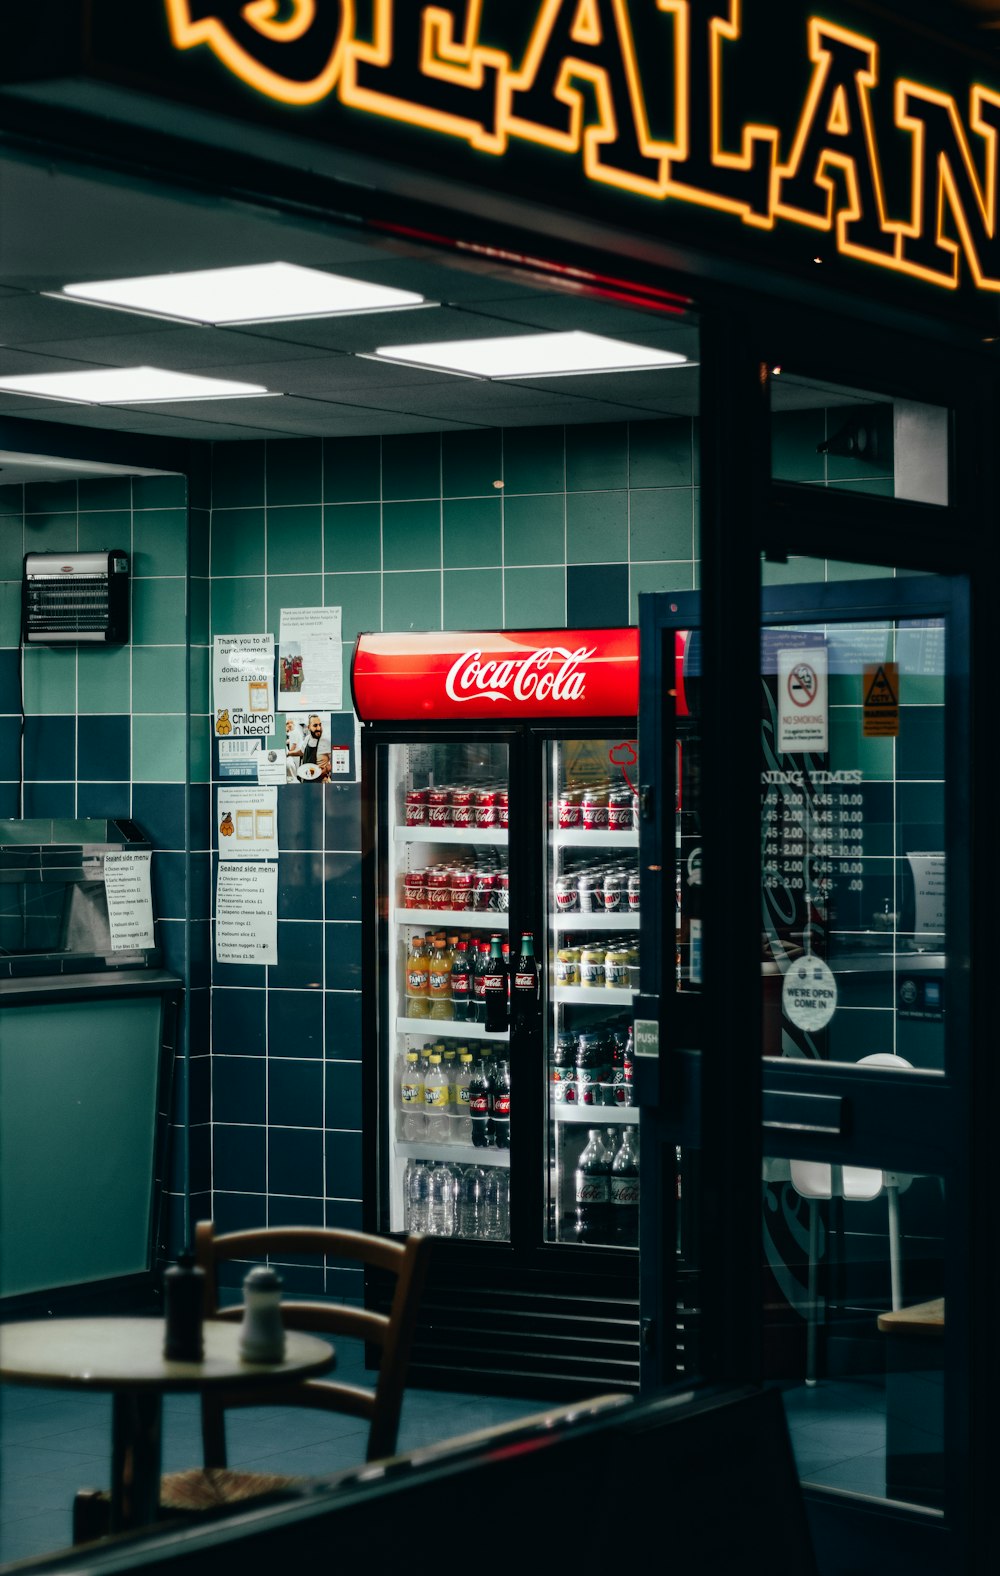 beverages in Coca-Cola beverage cooler inside shop during night